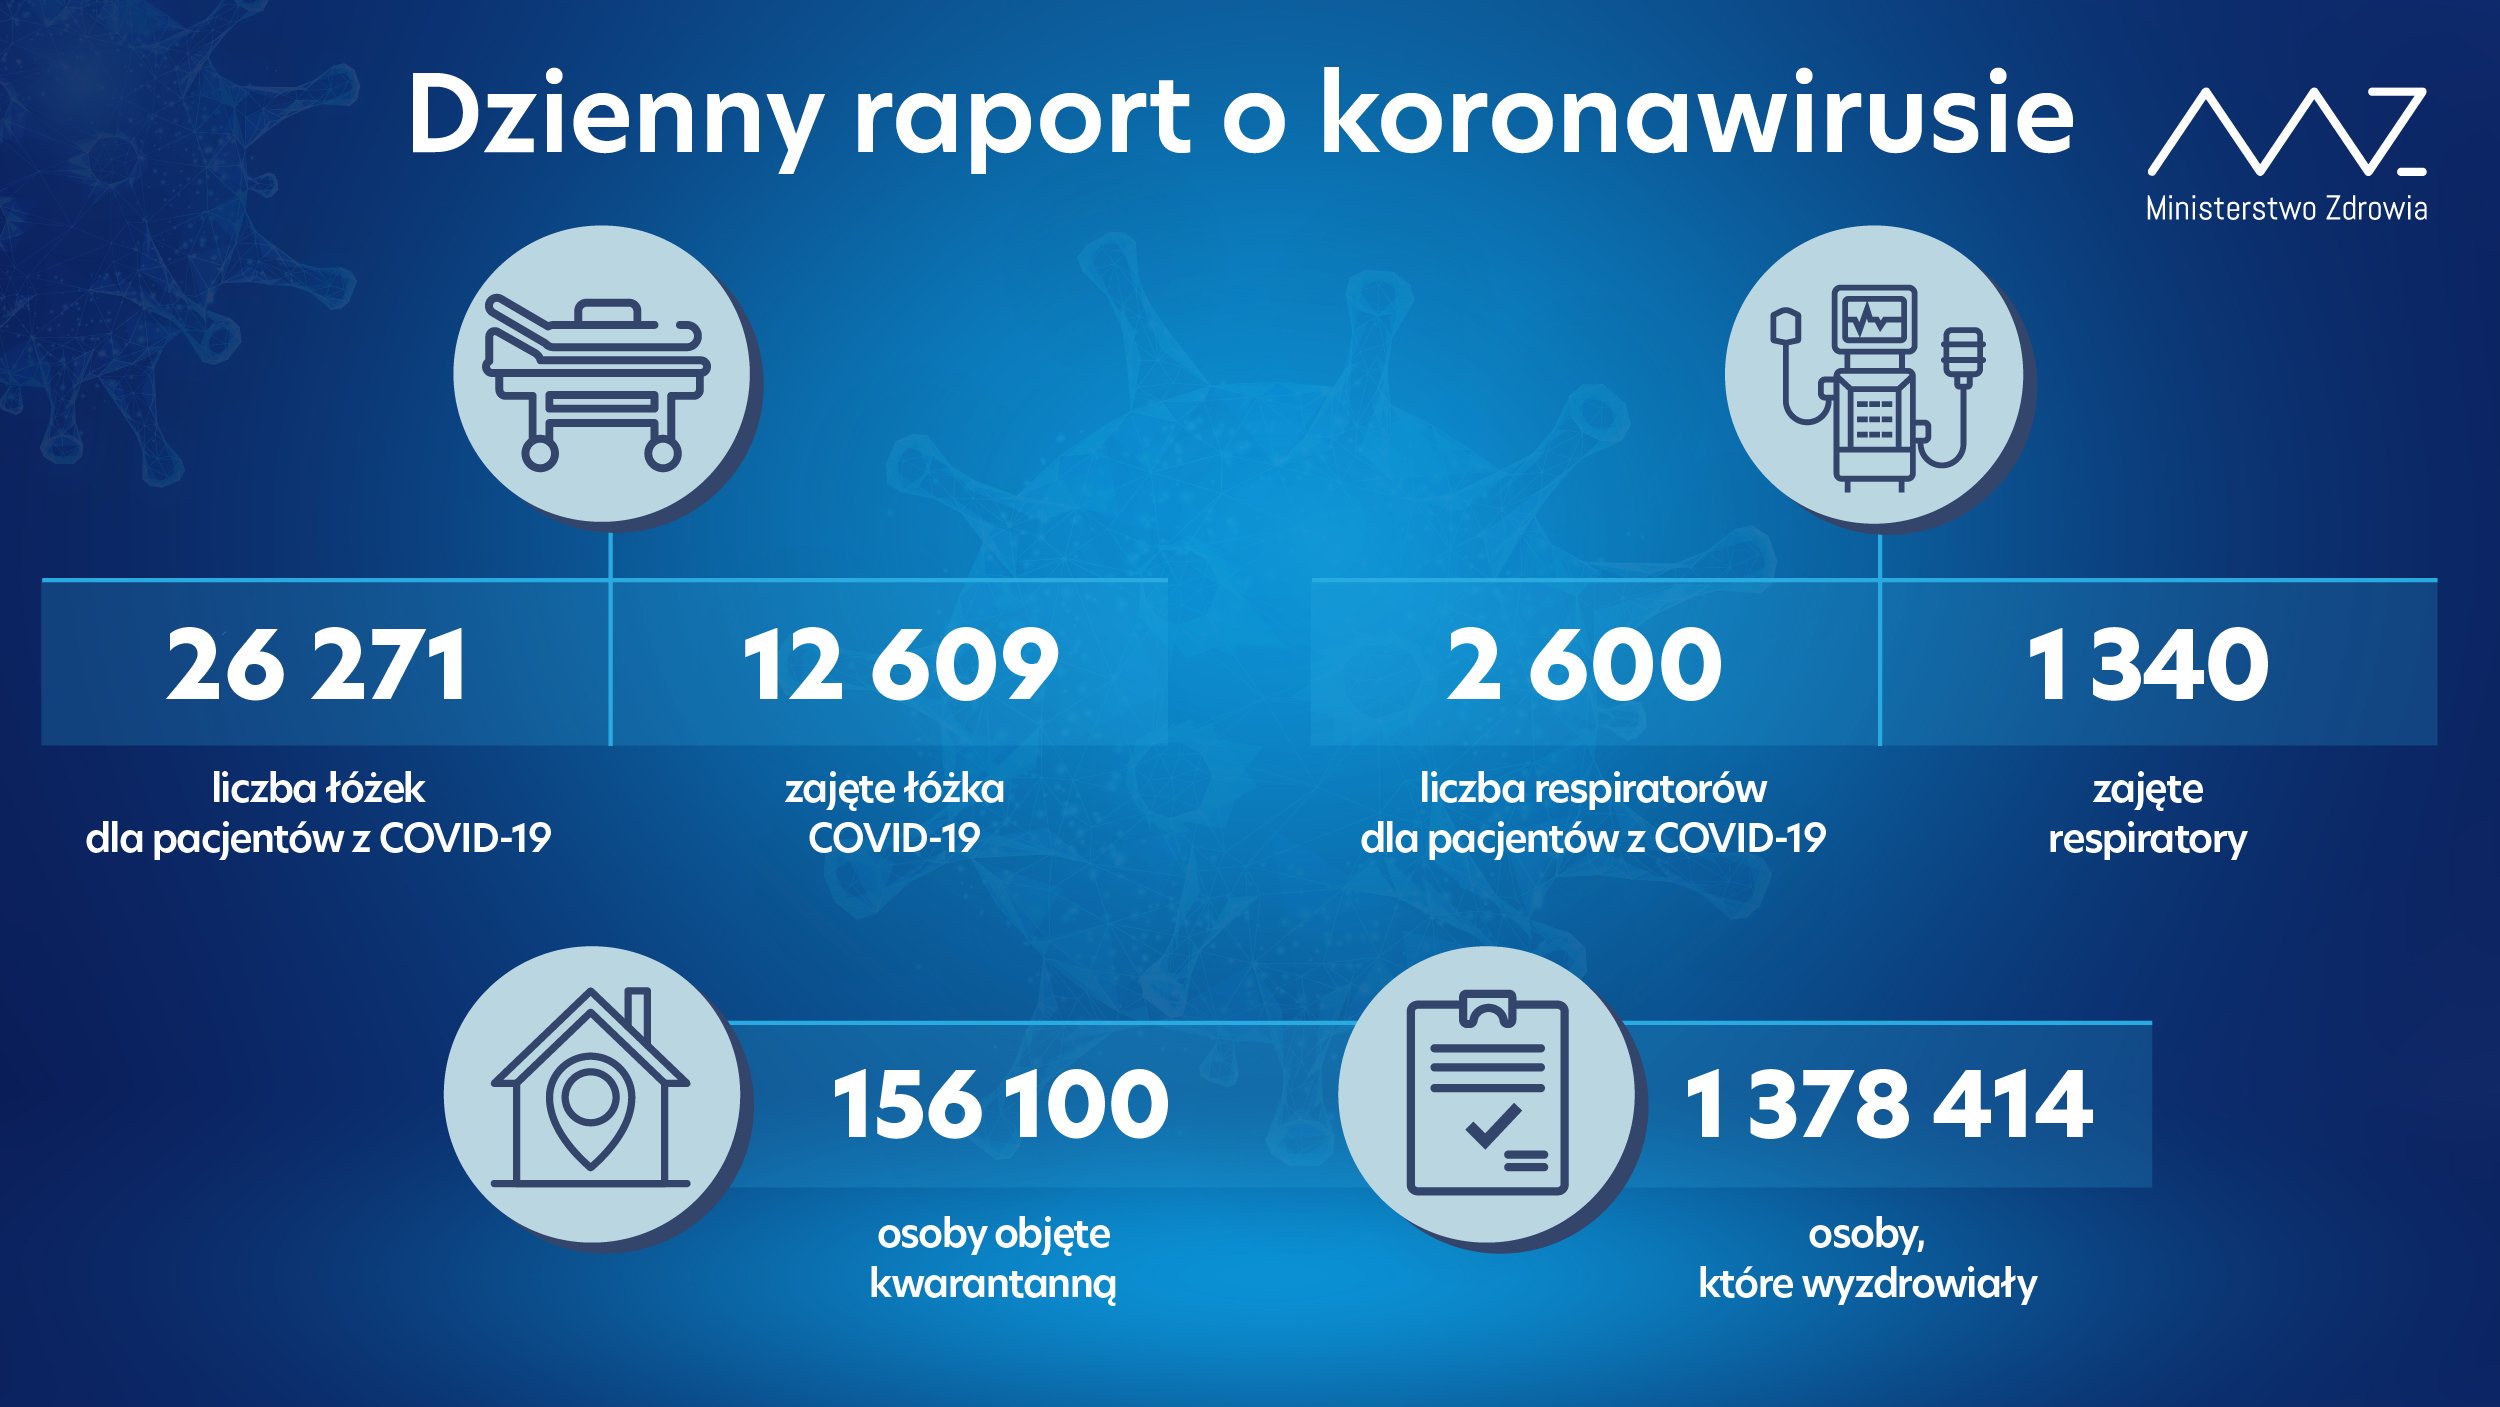 Wzrost liczby osób hospitalizowanych z COVID-19. Ponad 7 tys. nowych zakażeń koronawirusem